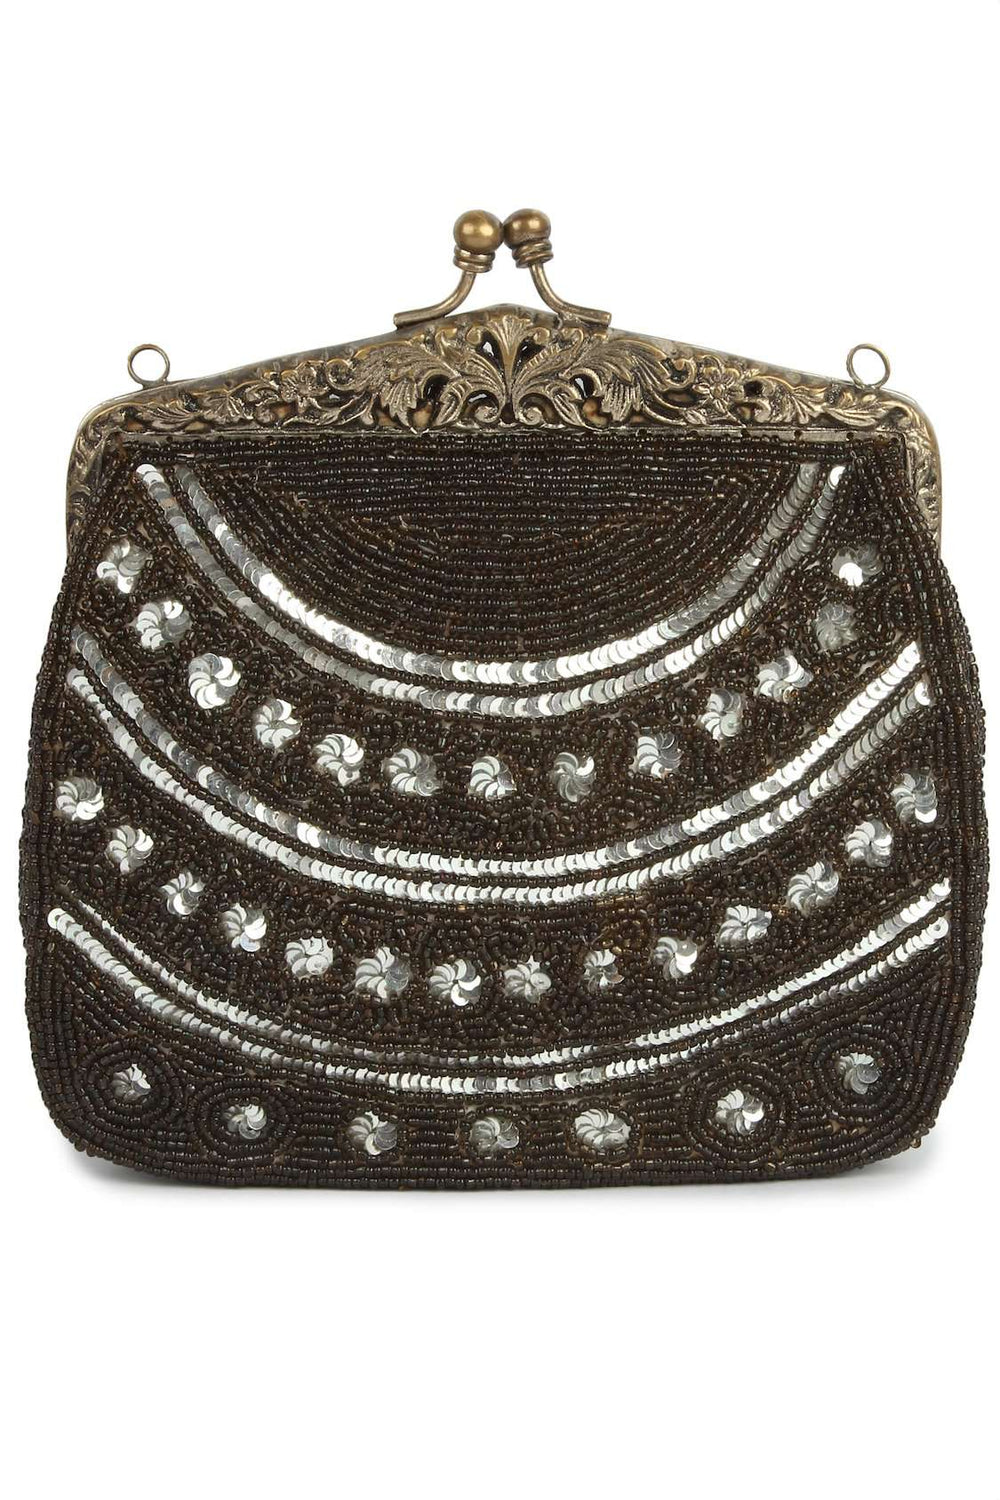 Leah Antique Silver Vintage Handbag